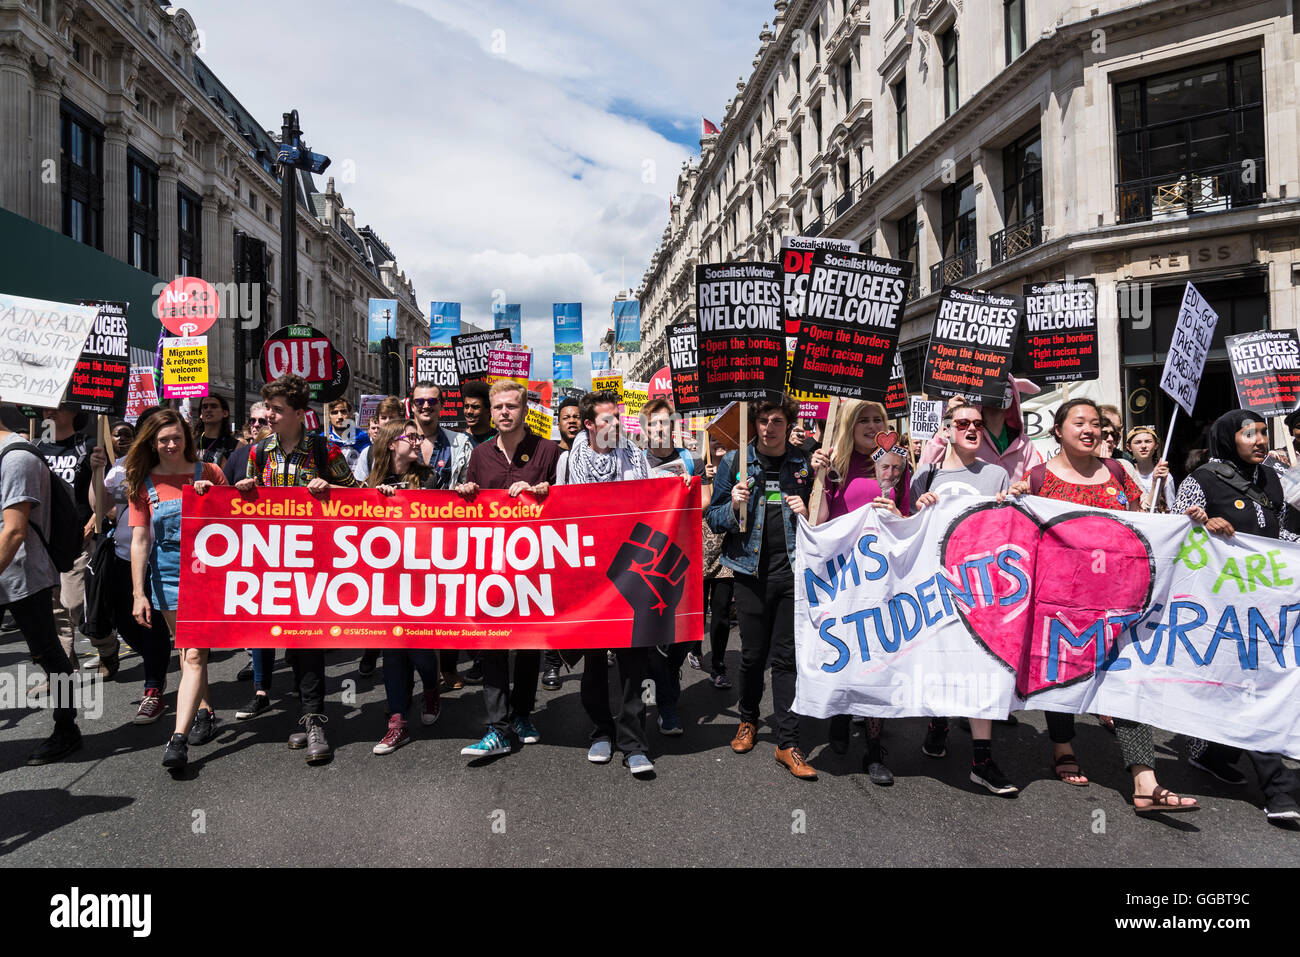 Una soluzione: Rivoluzione, non più austerità - No al razzismo - Tories deve andare, dimostrazione organizzata dal gruppo di popoli, Saturd Foto Stock